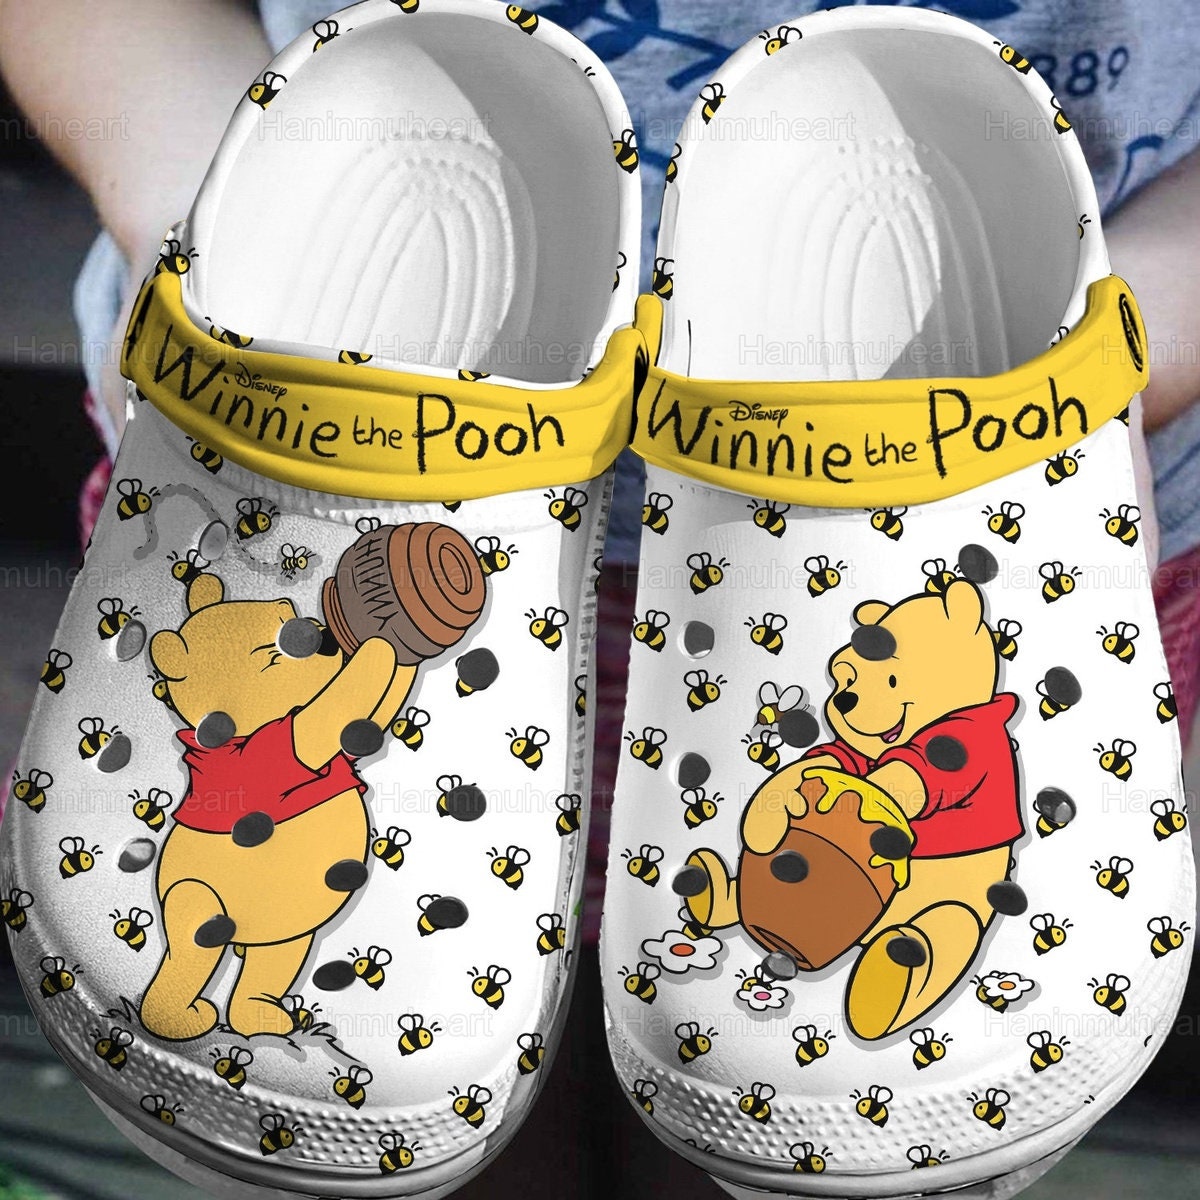 Winnie the pooh Jibbitz - Croc charms